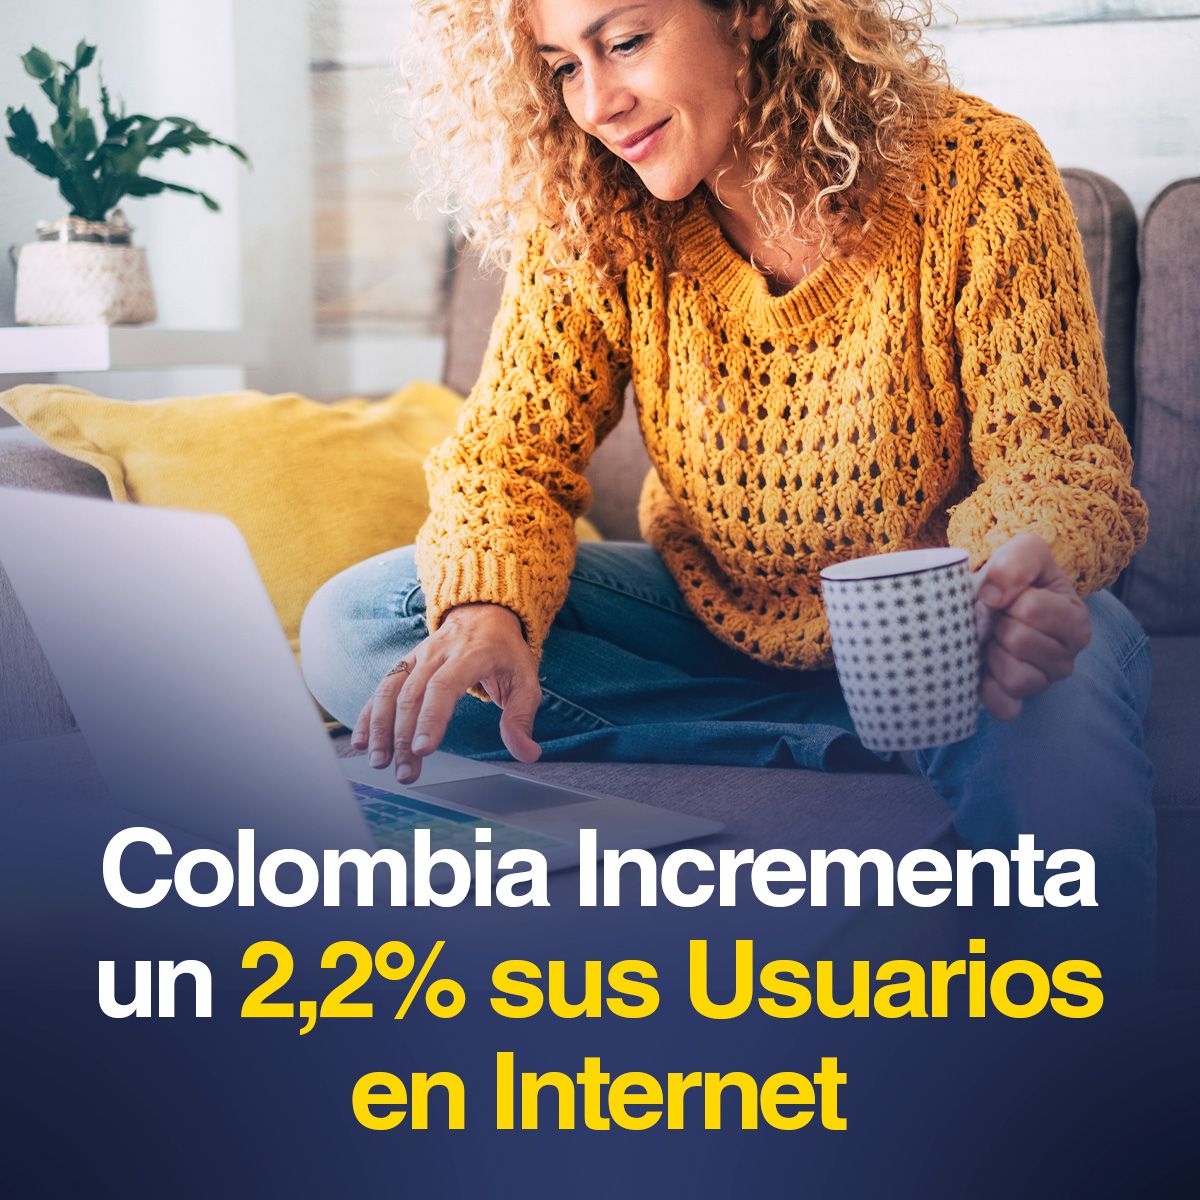 Colombia Incrementa un 2,2% sus Usuarios en Internet